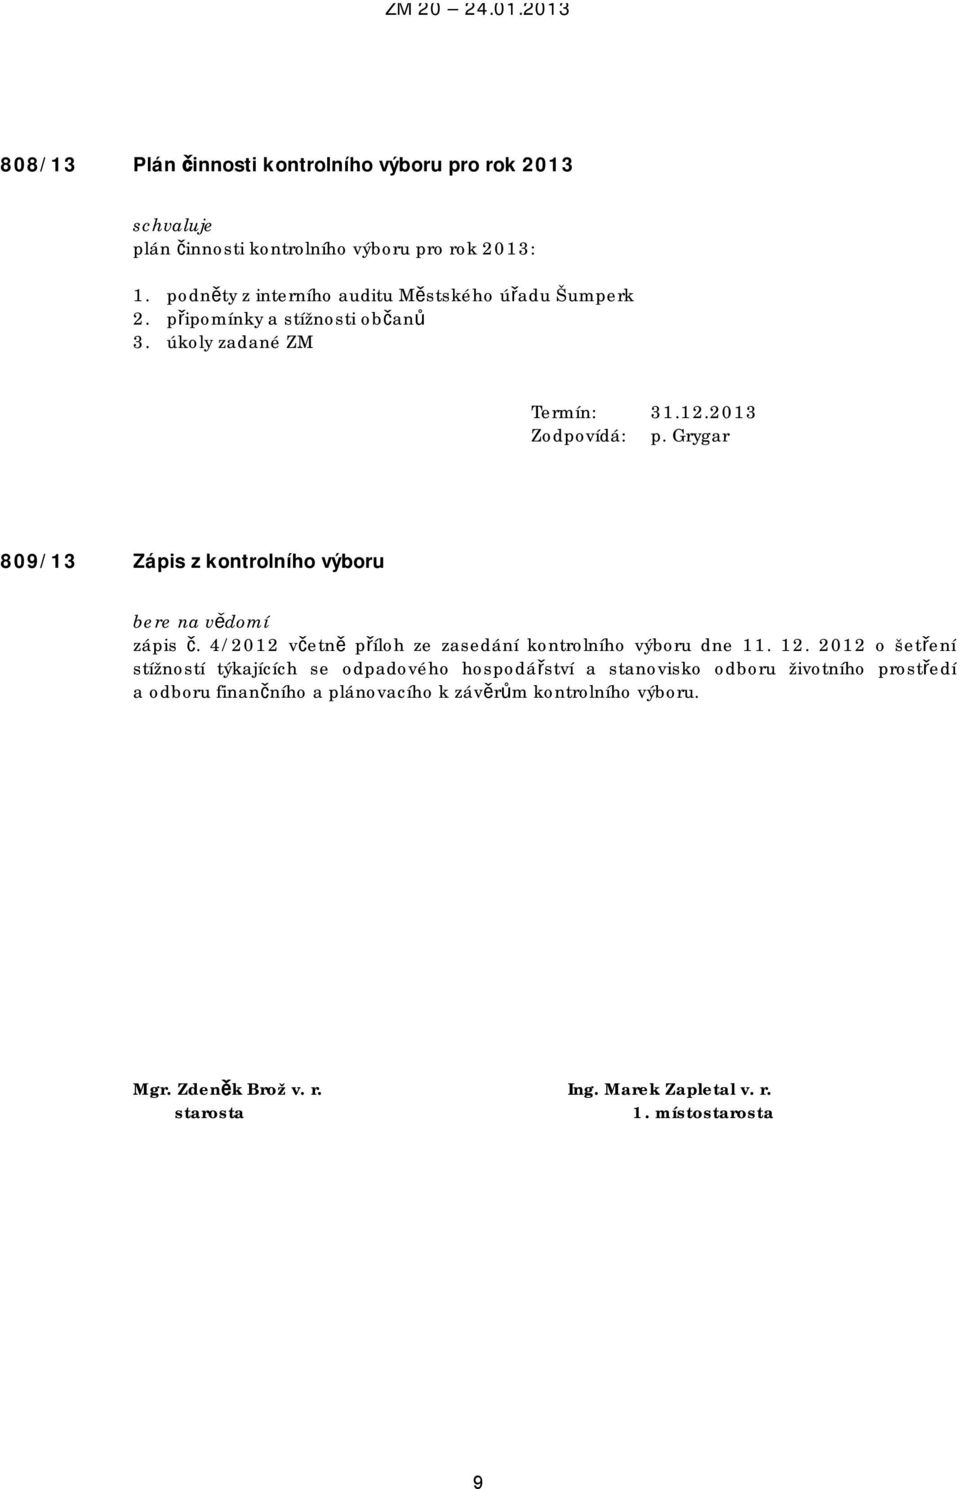 Grygar 809/13 Zápis z kontrolního výboru bere na vědomí zápis č. 4/2012 včetně příloh ze zasedání kontrolního výboru dne 11. 12.